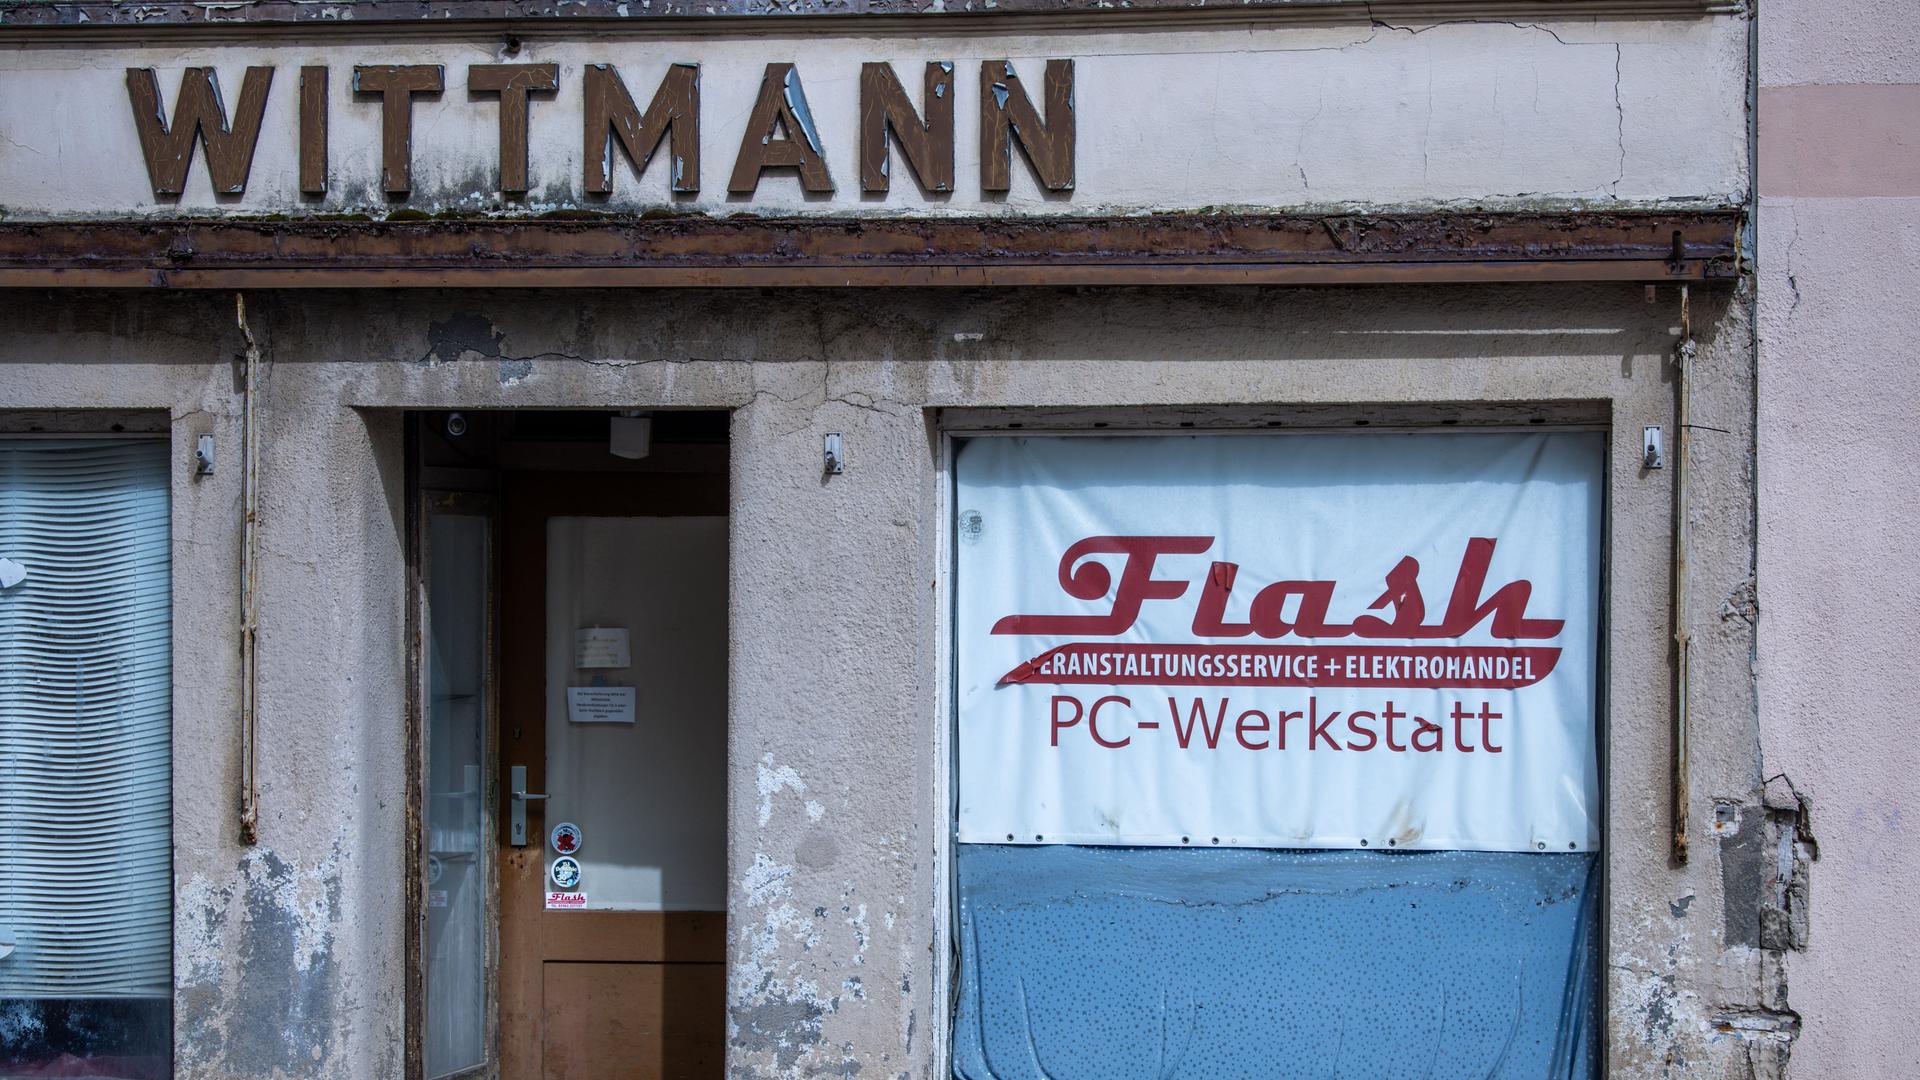 Ein leerstehendes Geschäft in Penzlin, Mecklenburg-Vorpommern. Auf der bröckelnden Fassade steht "Wittmann", auf dem Schaufenster "Flash. PC-Werkstatt".